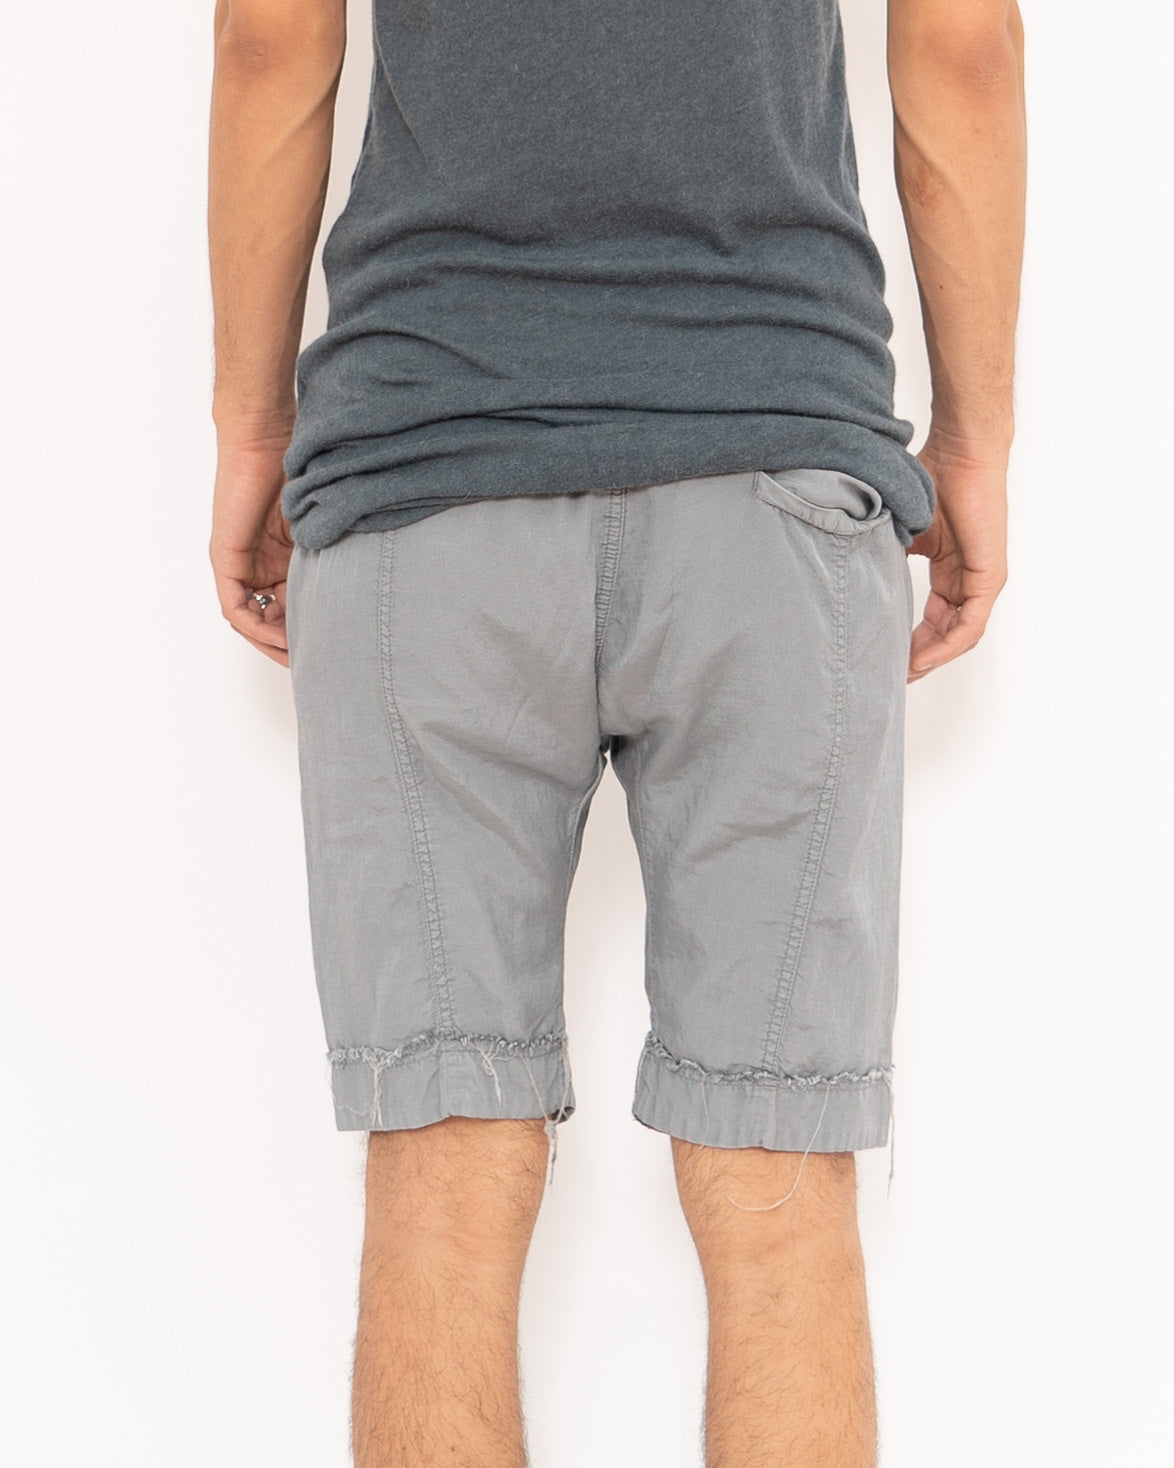 SS16 Grey Perth Shorts Sample